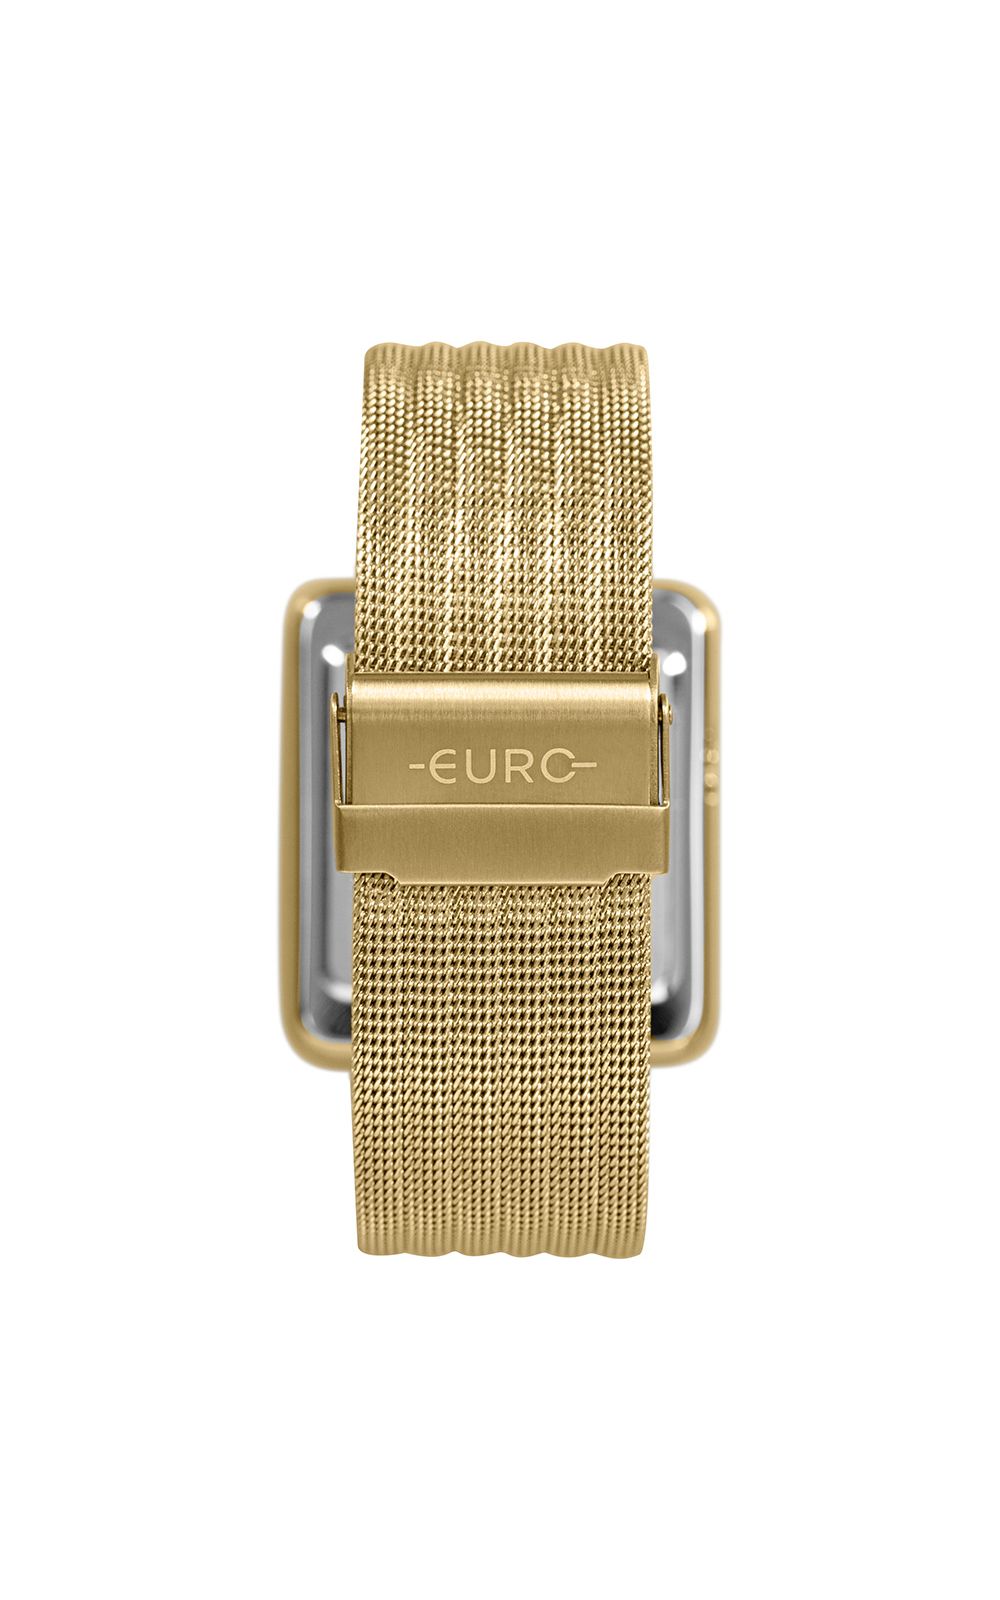 Foto 3 - Relógio Euro Feminino Fashion Fit Led Dourado - EUBJ3937AA/4F